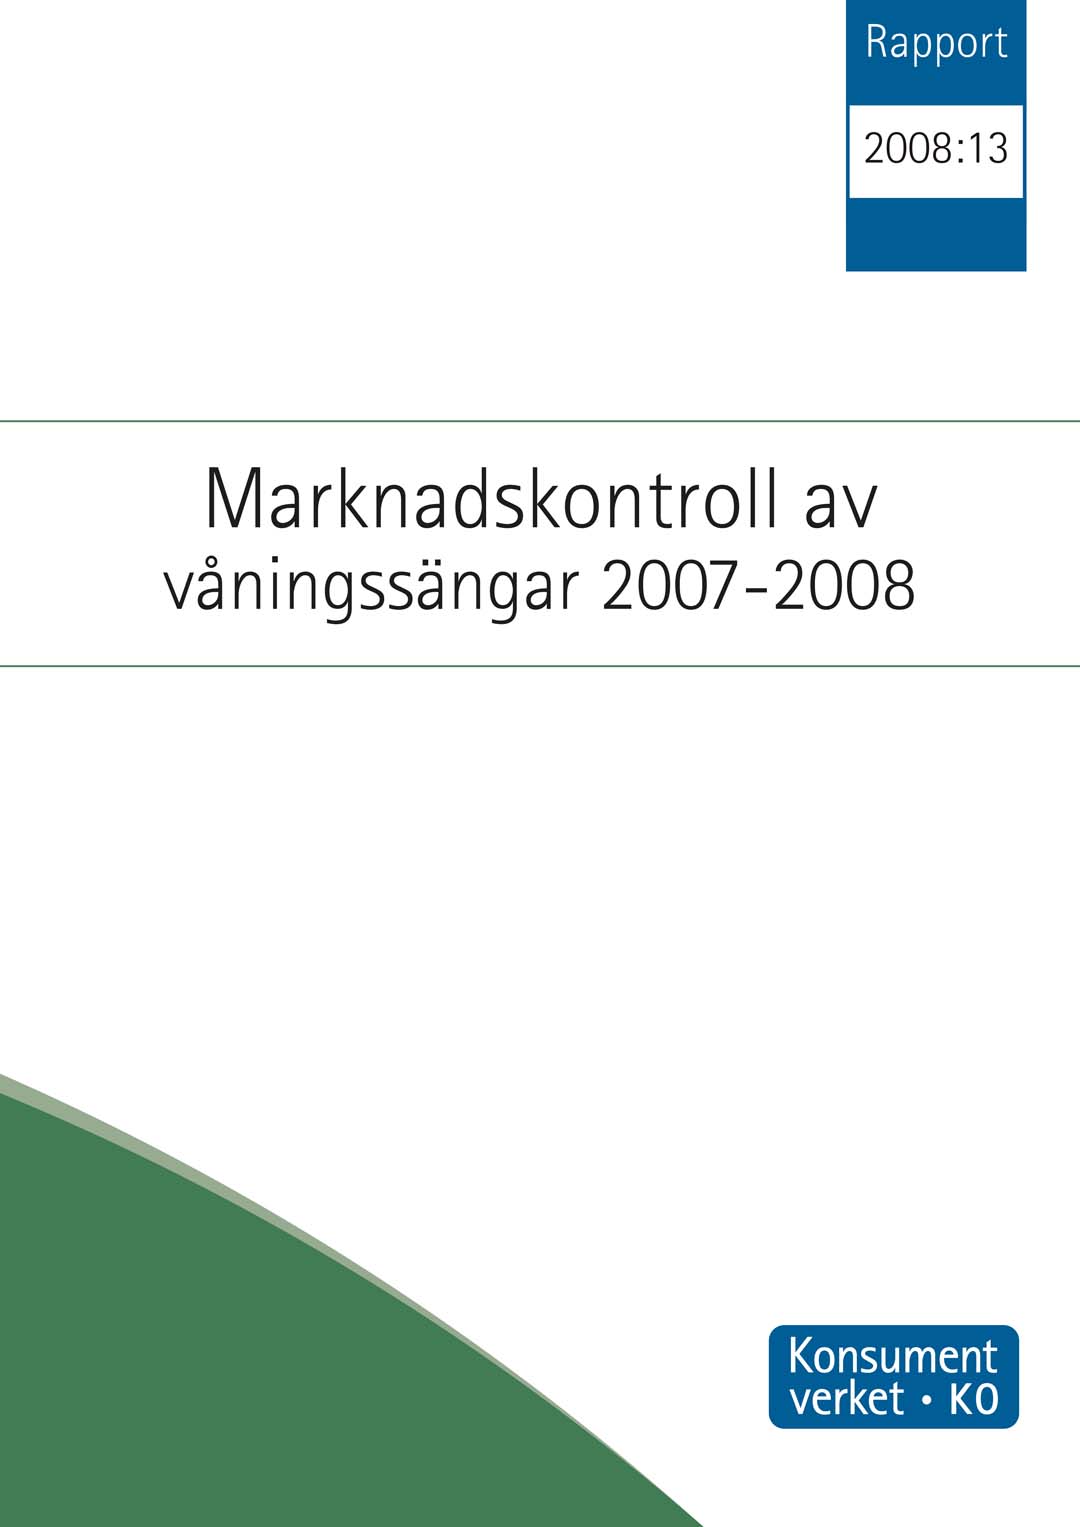 Rapport 2008:13 Marknadskontroll av våningssängar